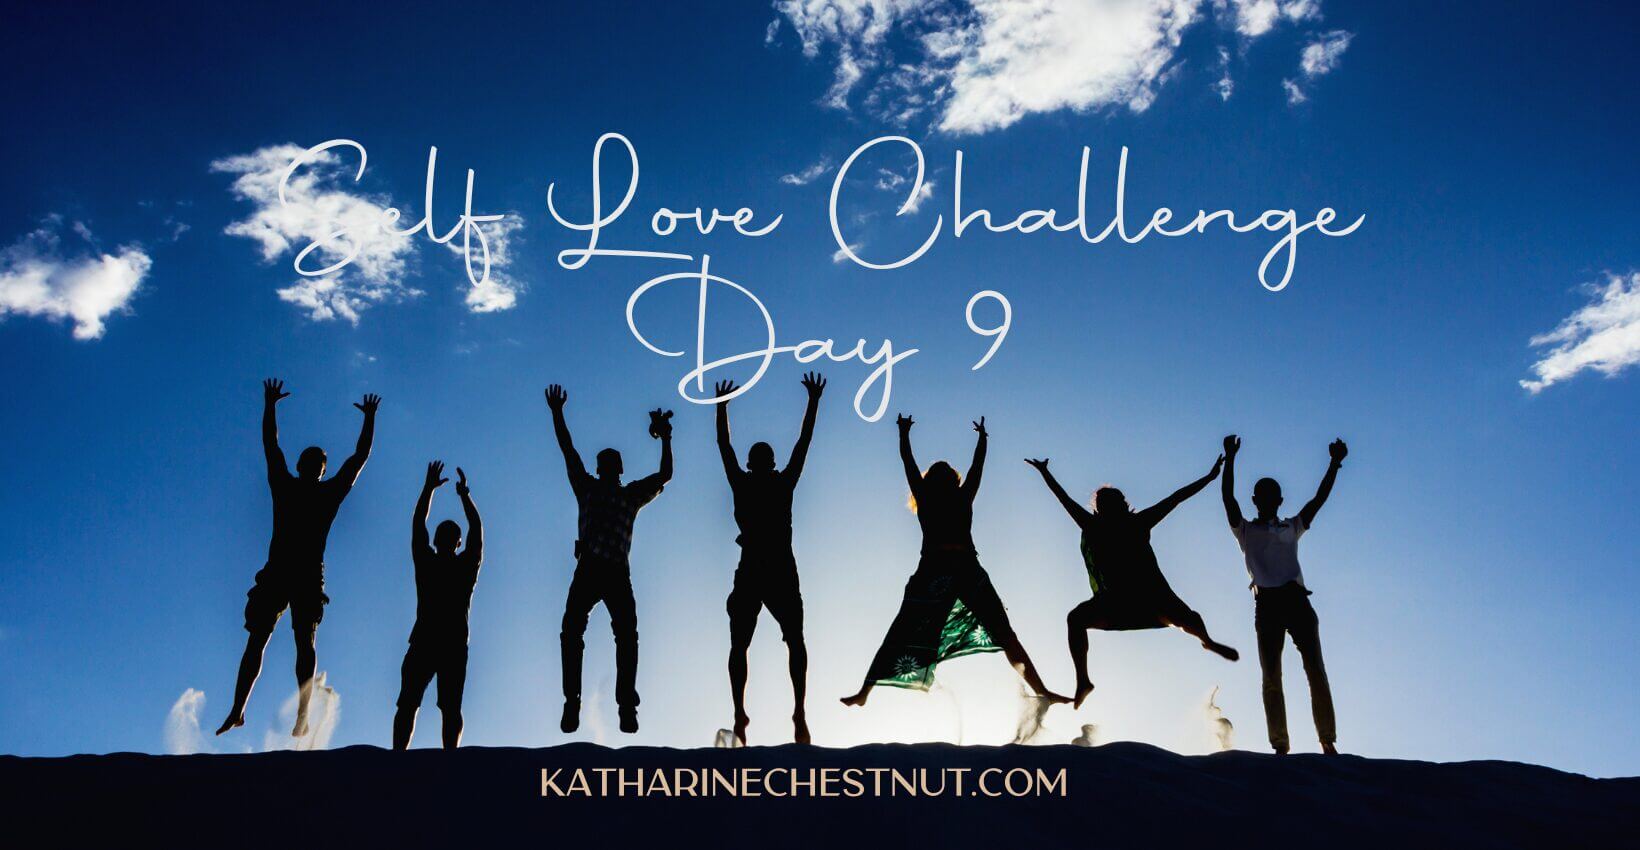 Self Love Challenge | Katharine Chestnut